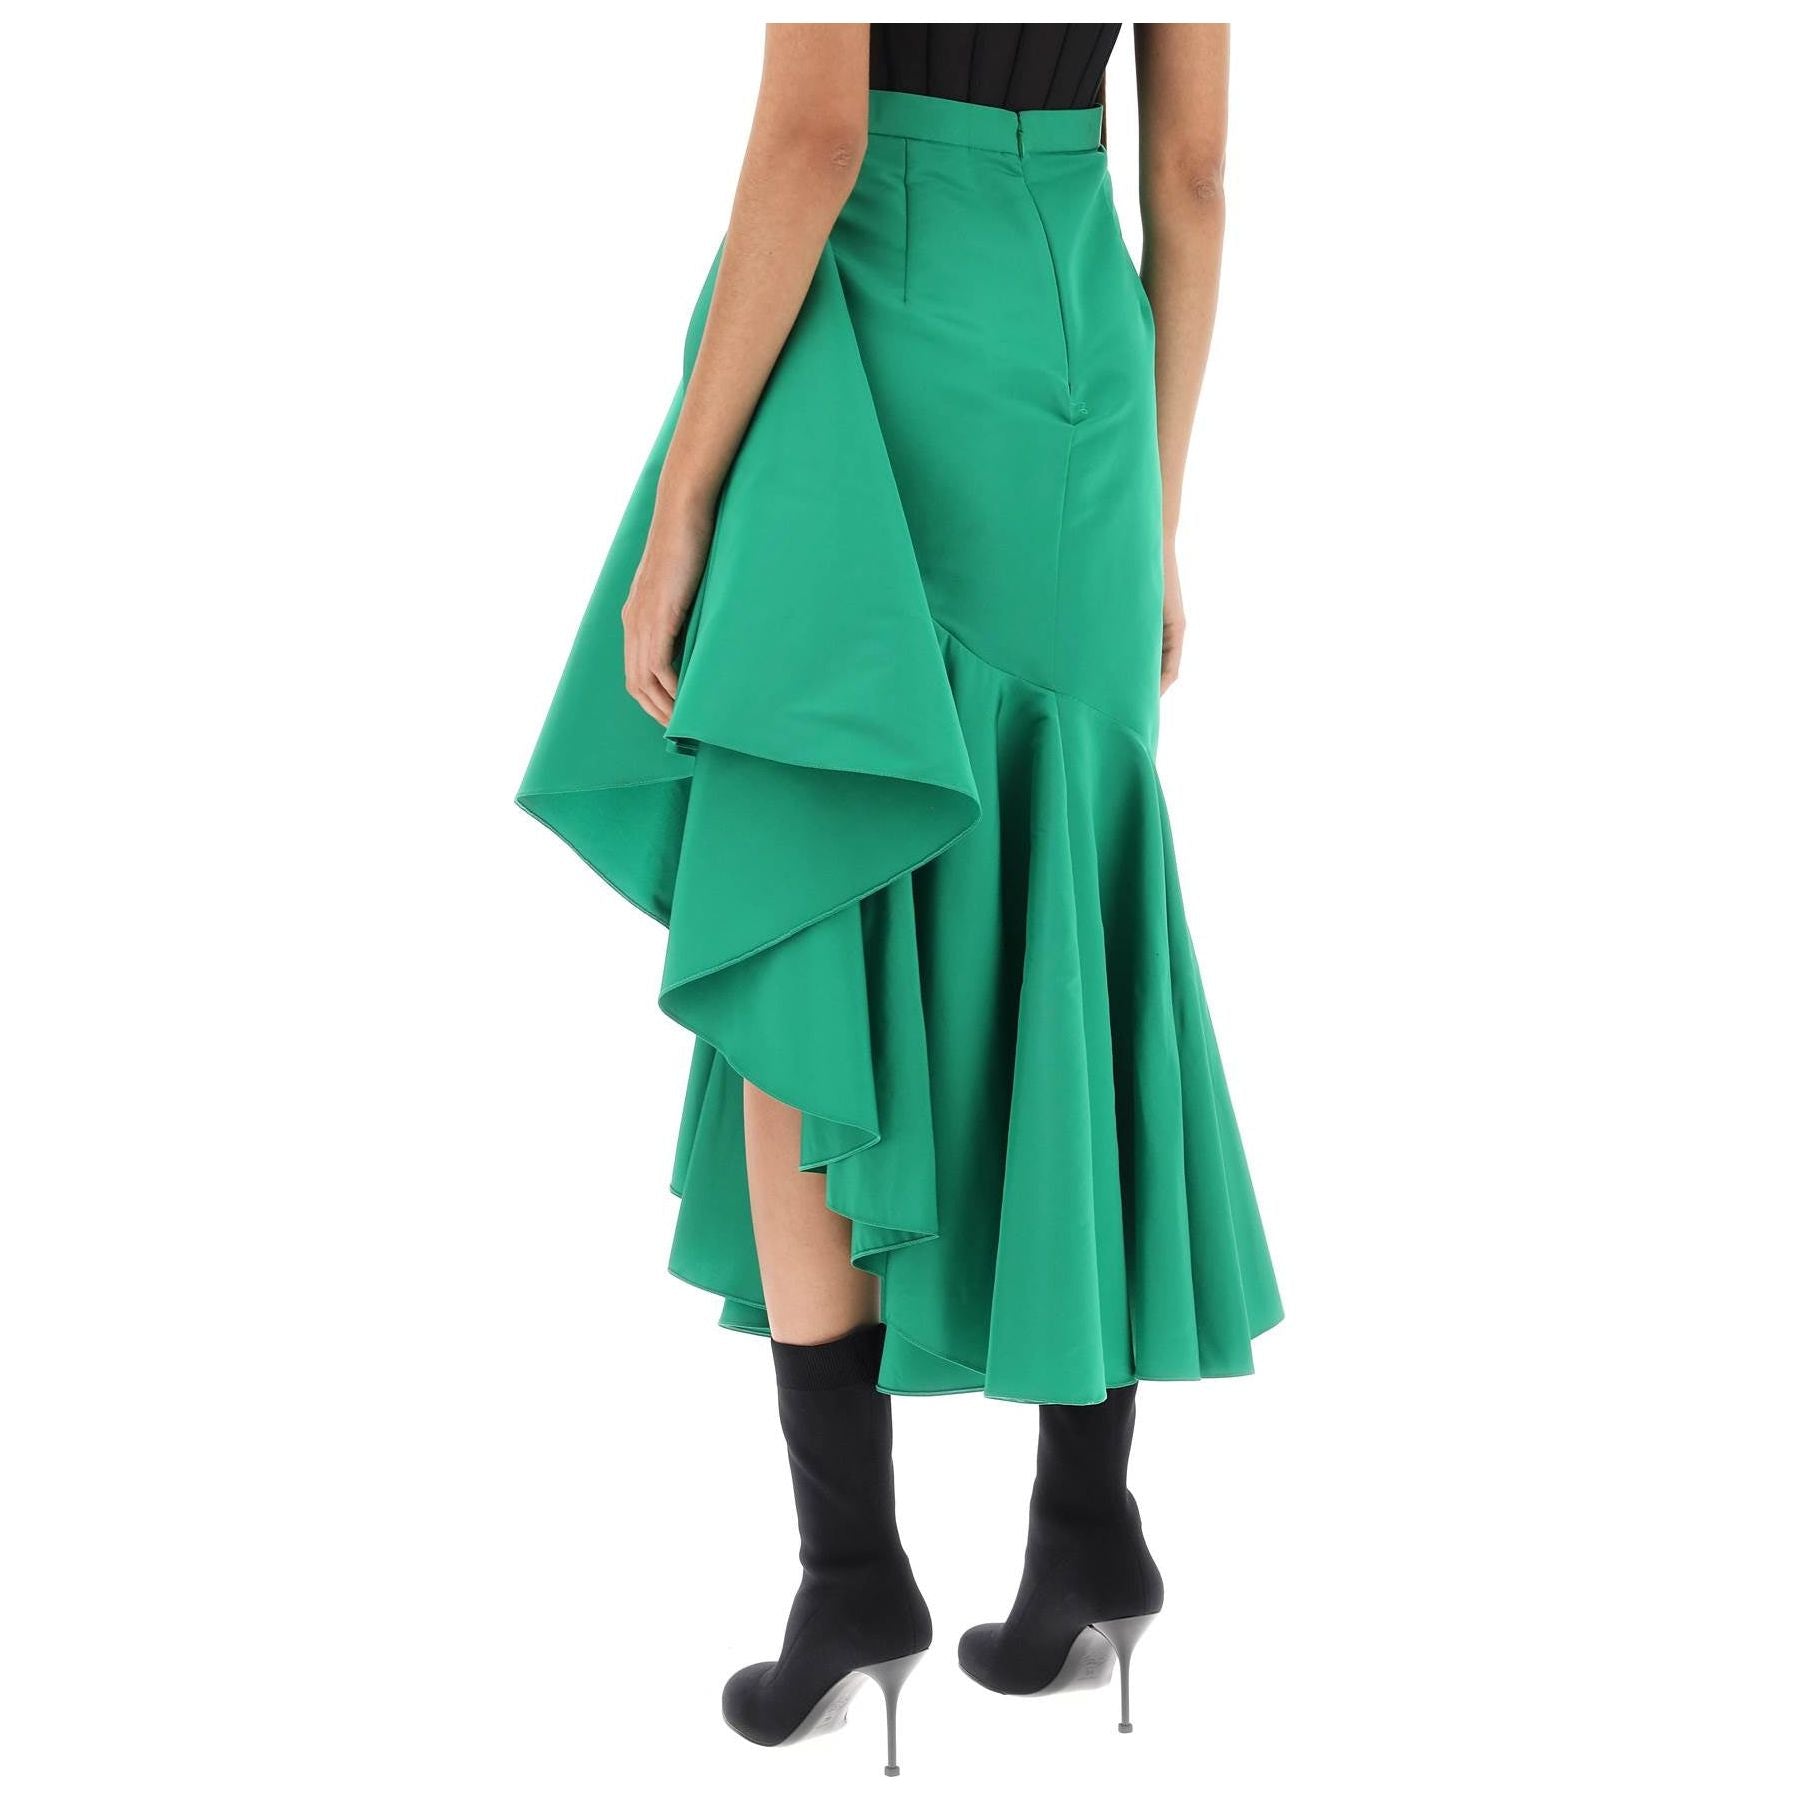 Asymmetric Polyfaille Skirt with Maxi Flounce